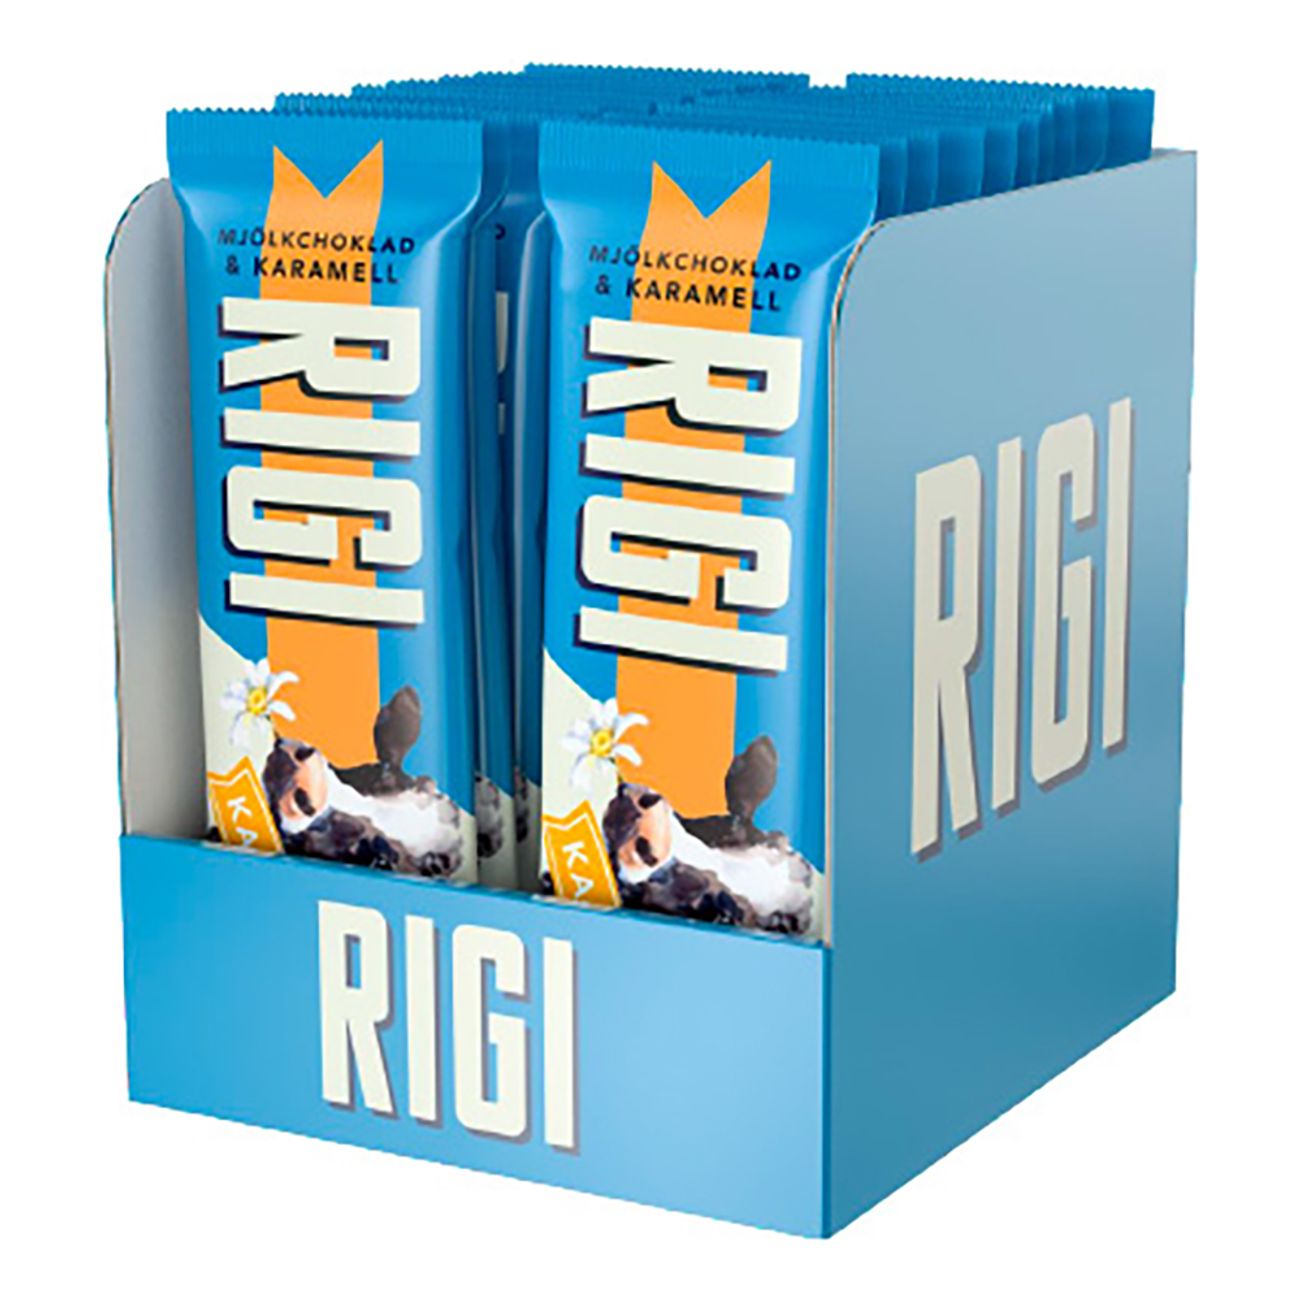 rigi-karamell-chokladbit-73958-3